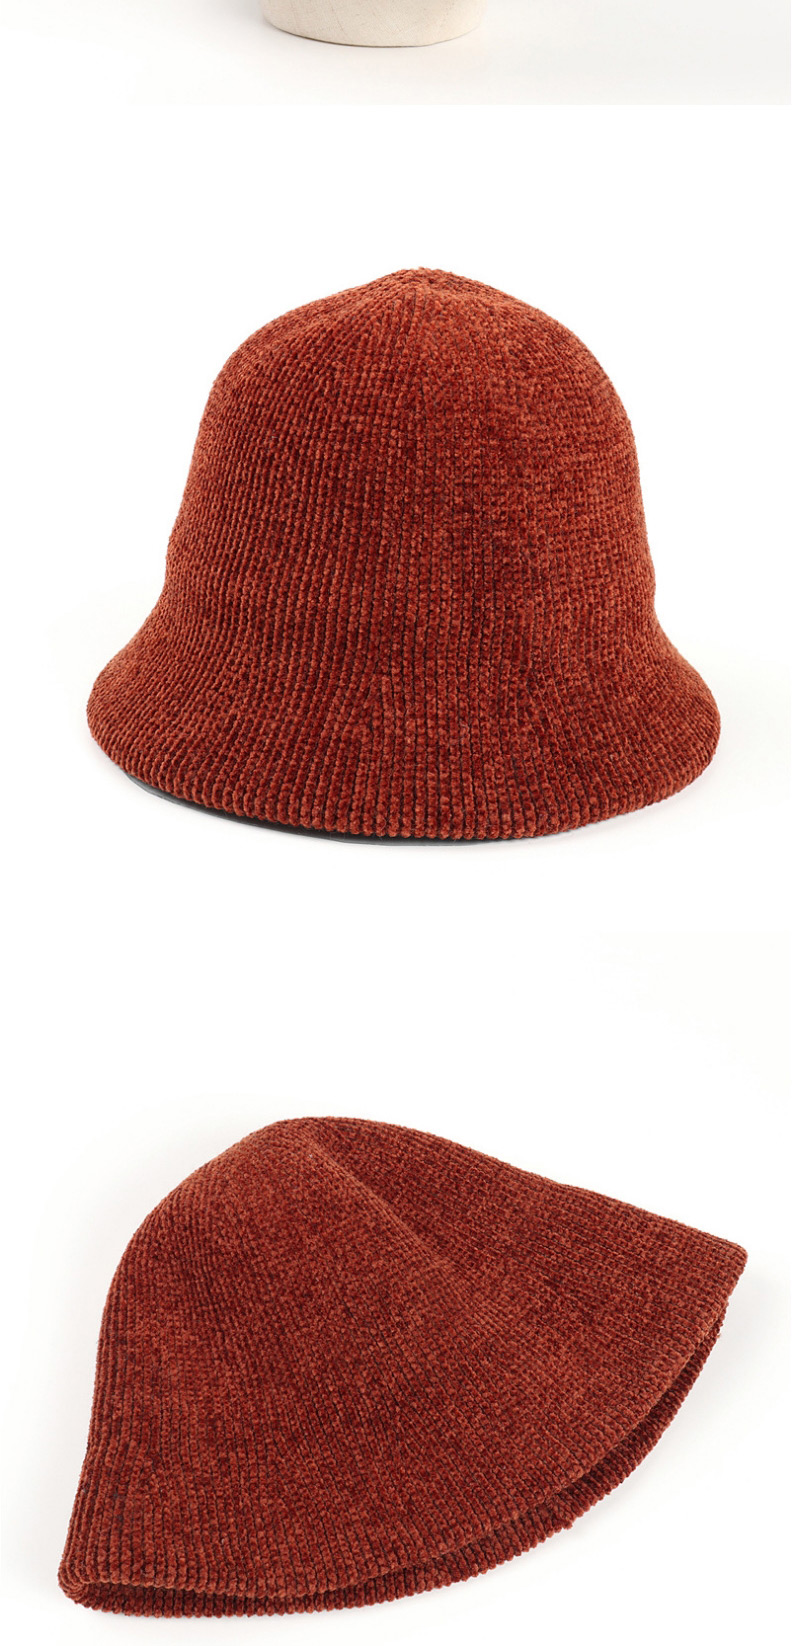 Fashion Caramel Corduroy Dome Knitted Fisherman Hat,Sun Hats